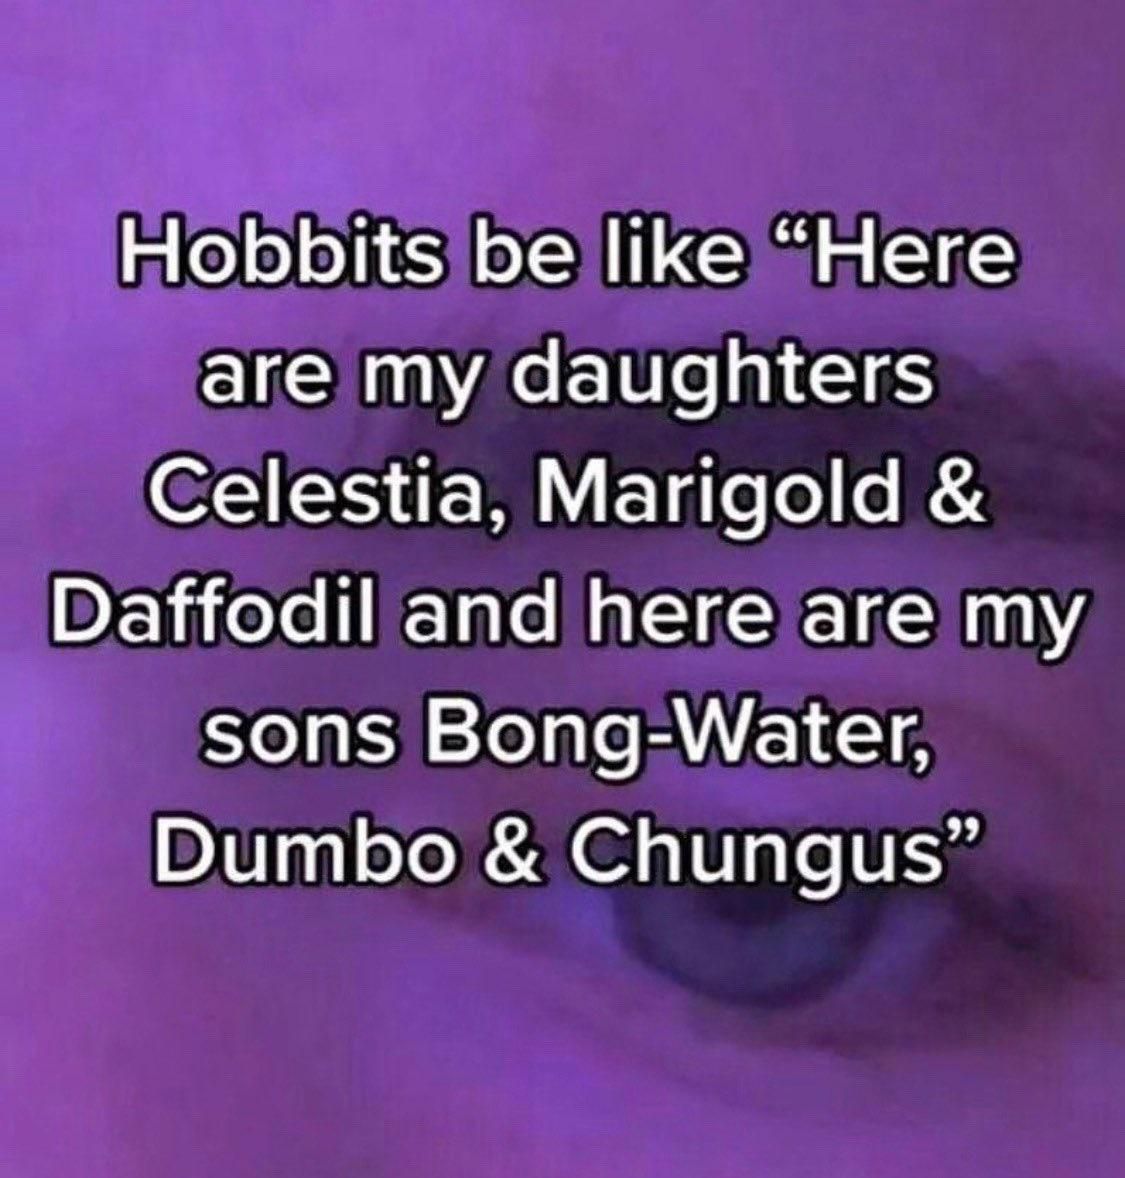 Meme on the naming of Hobbit children